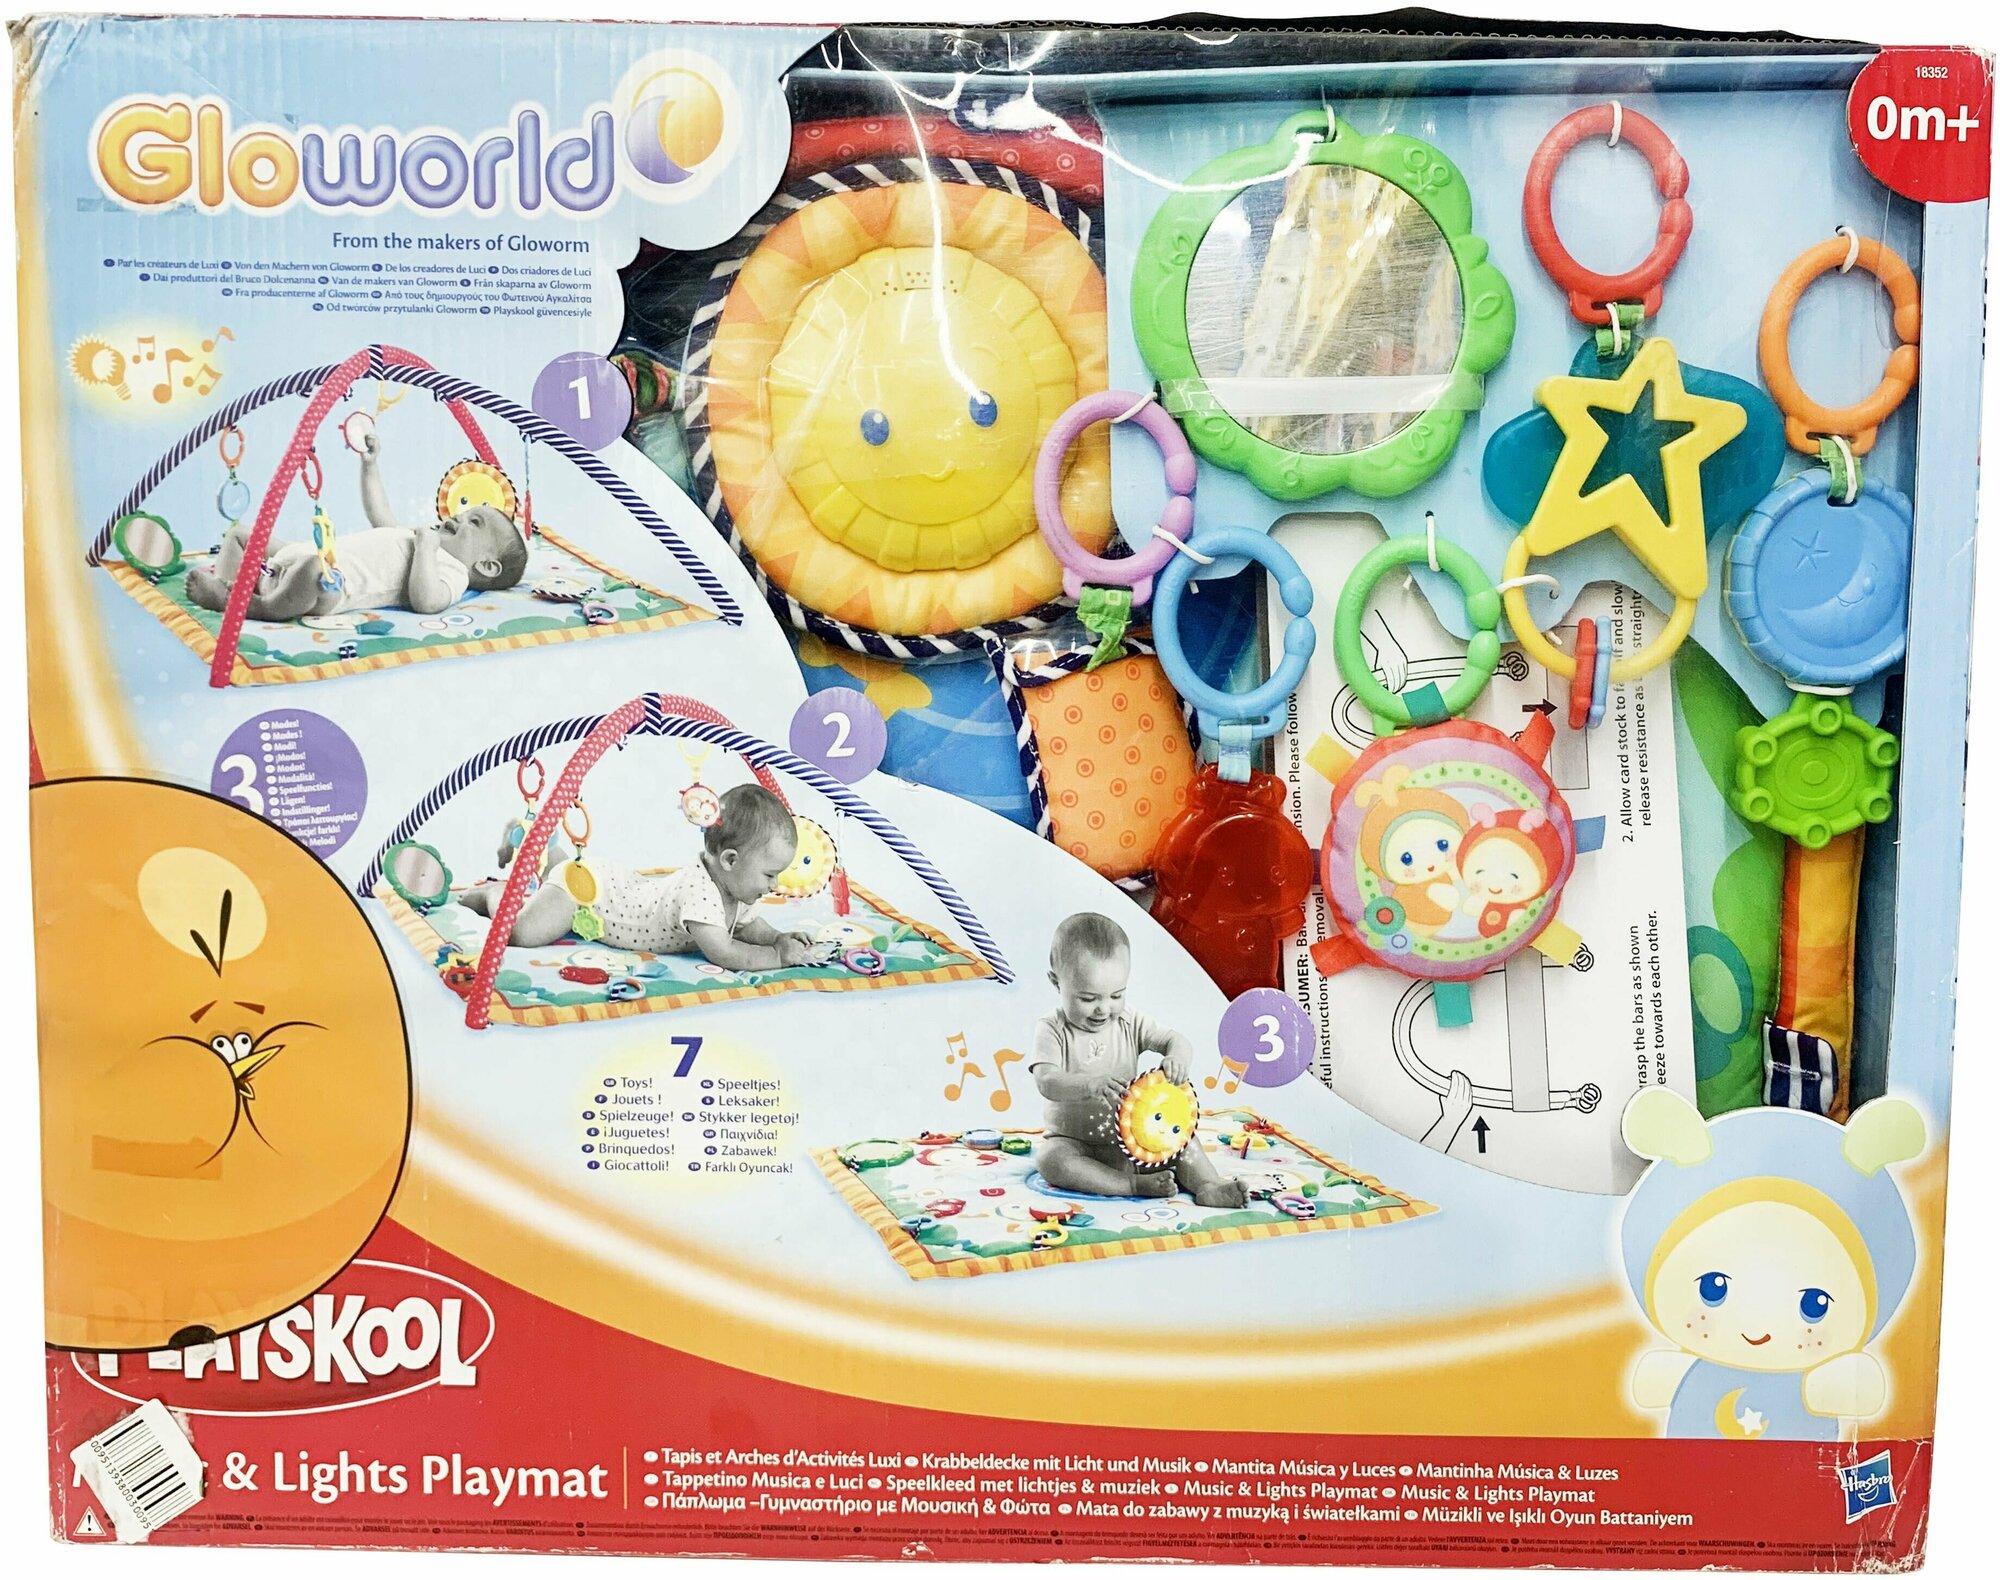 Игровой коврик Playskool Gloworld 18352